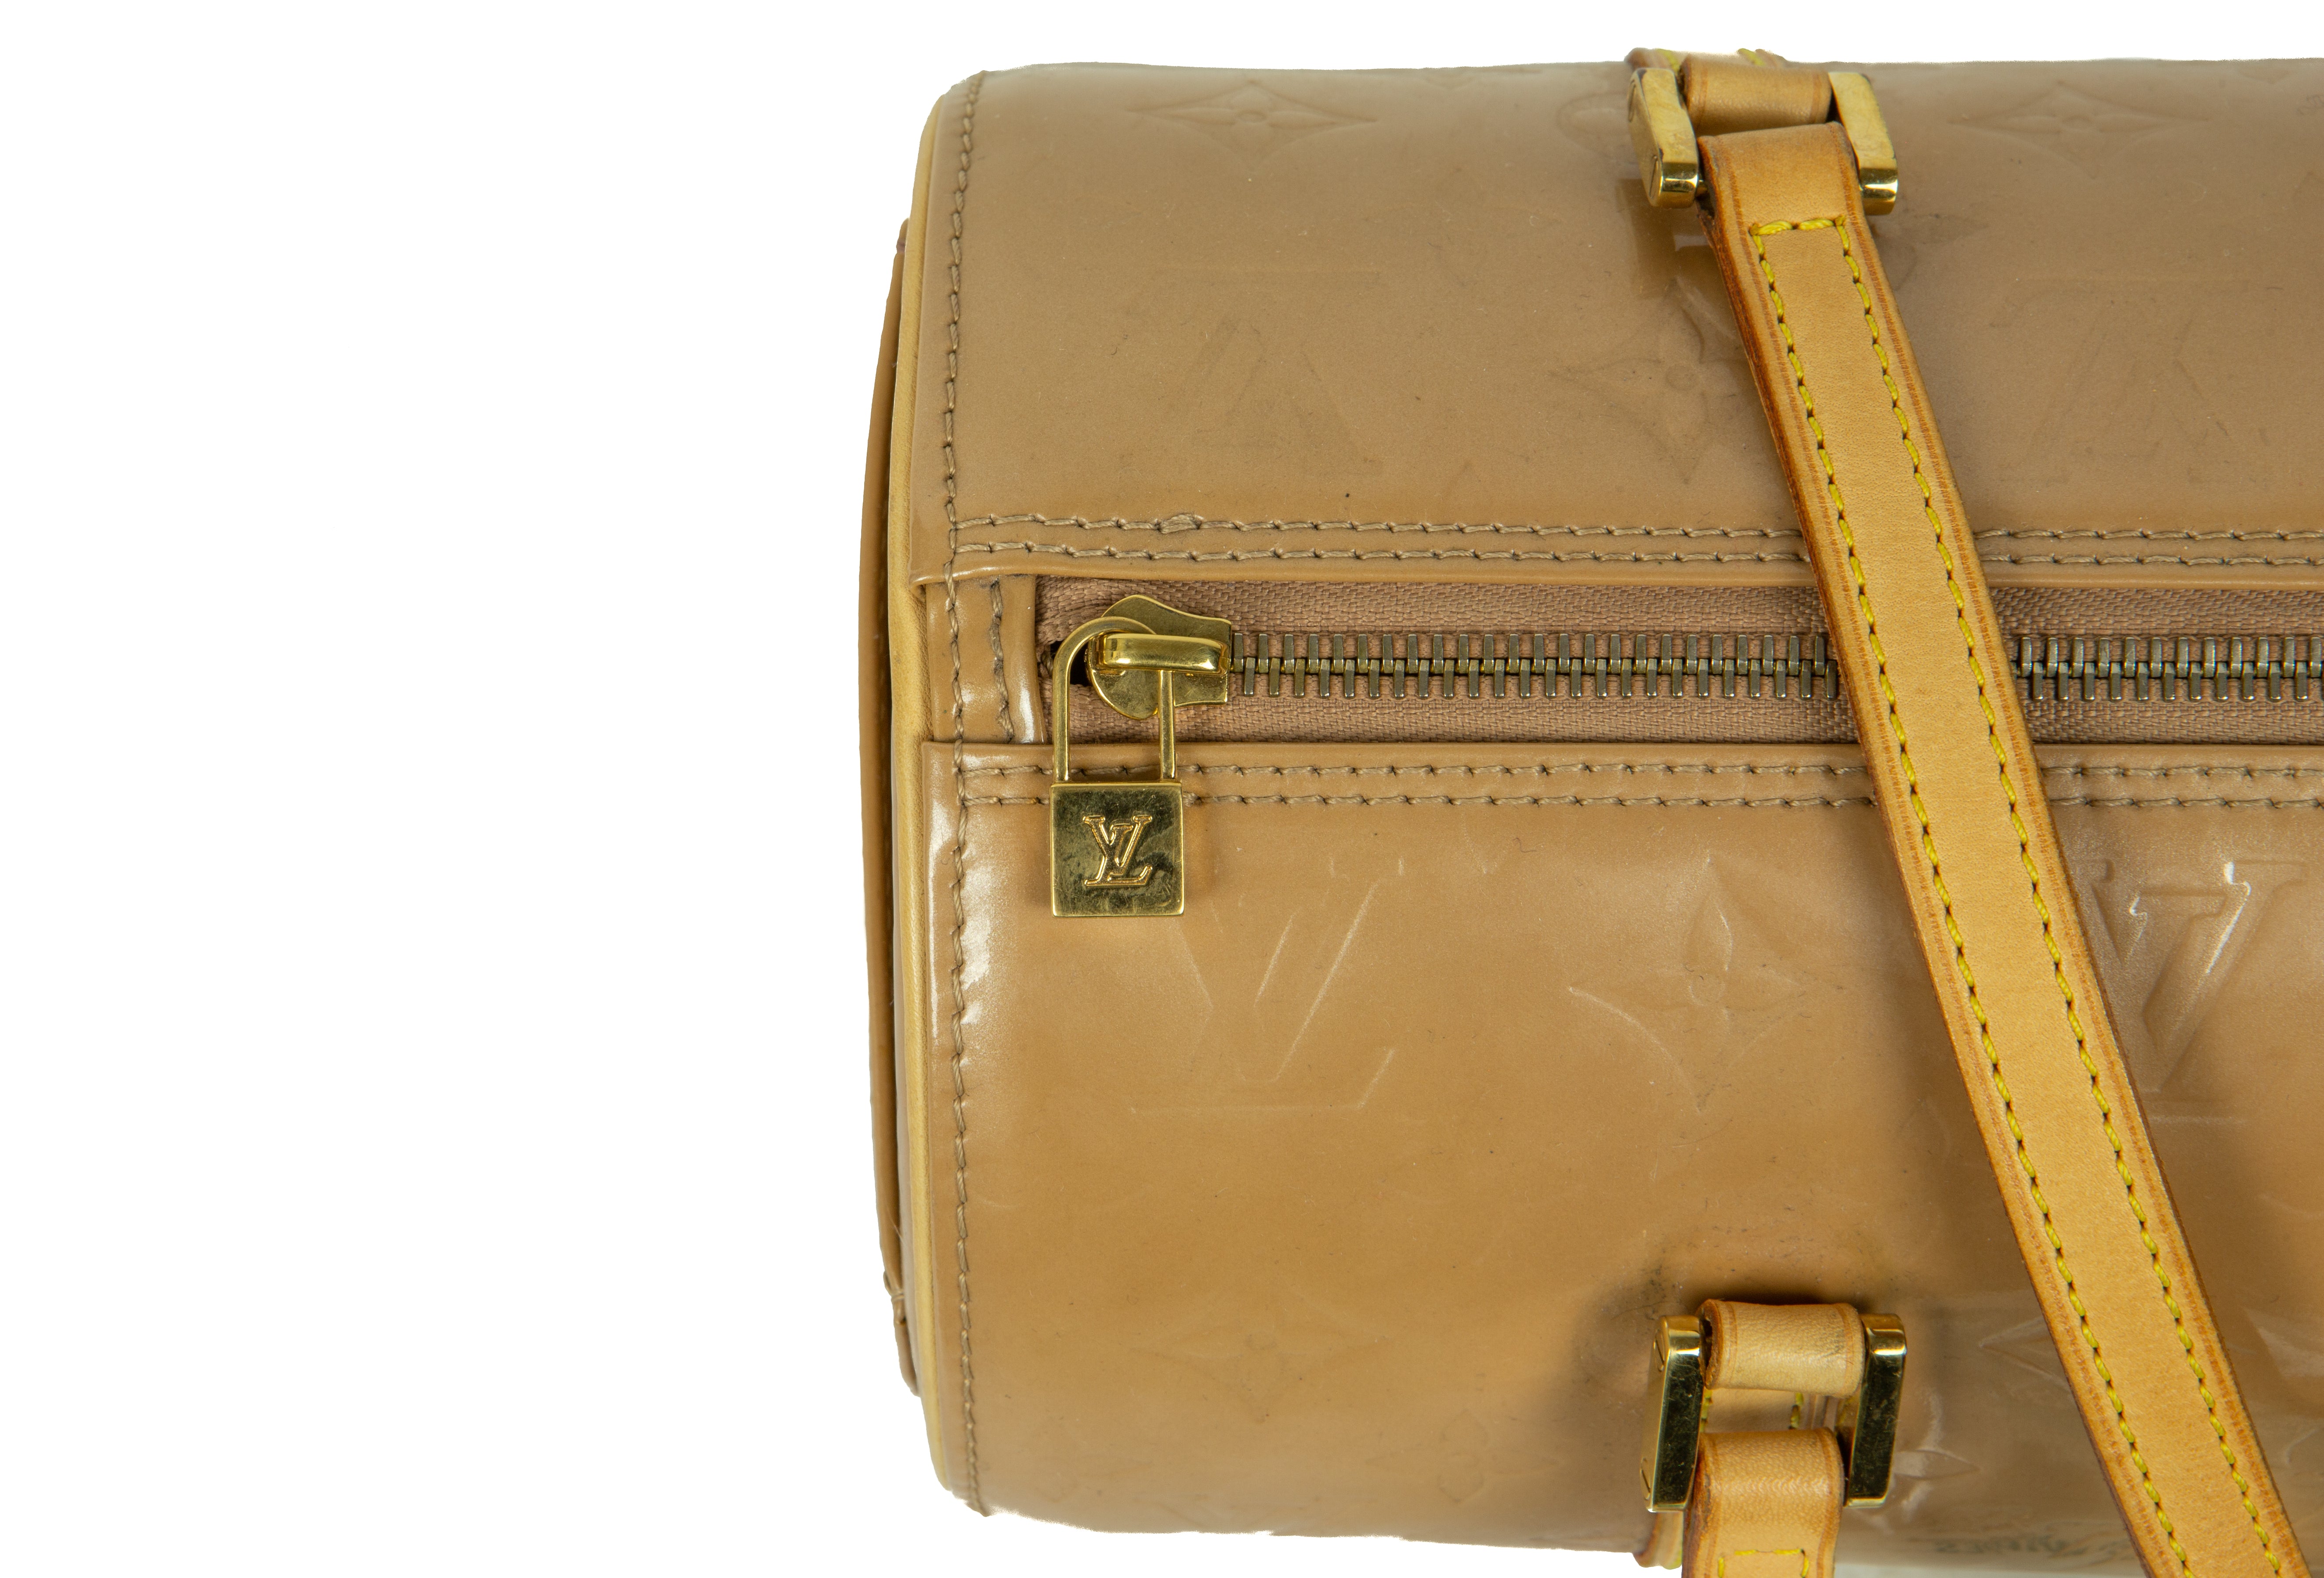 Louis Vuitton Bedford Barrel Lacquer Bag